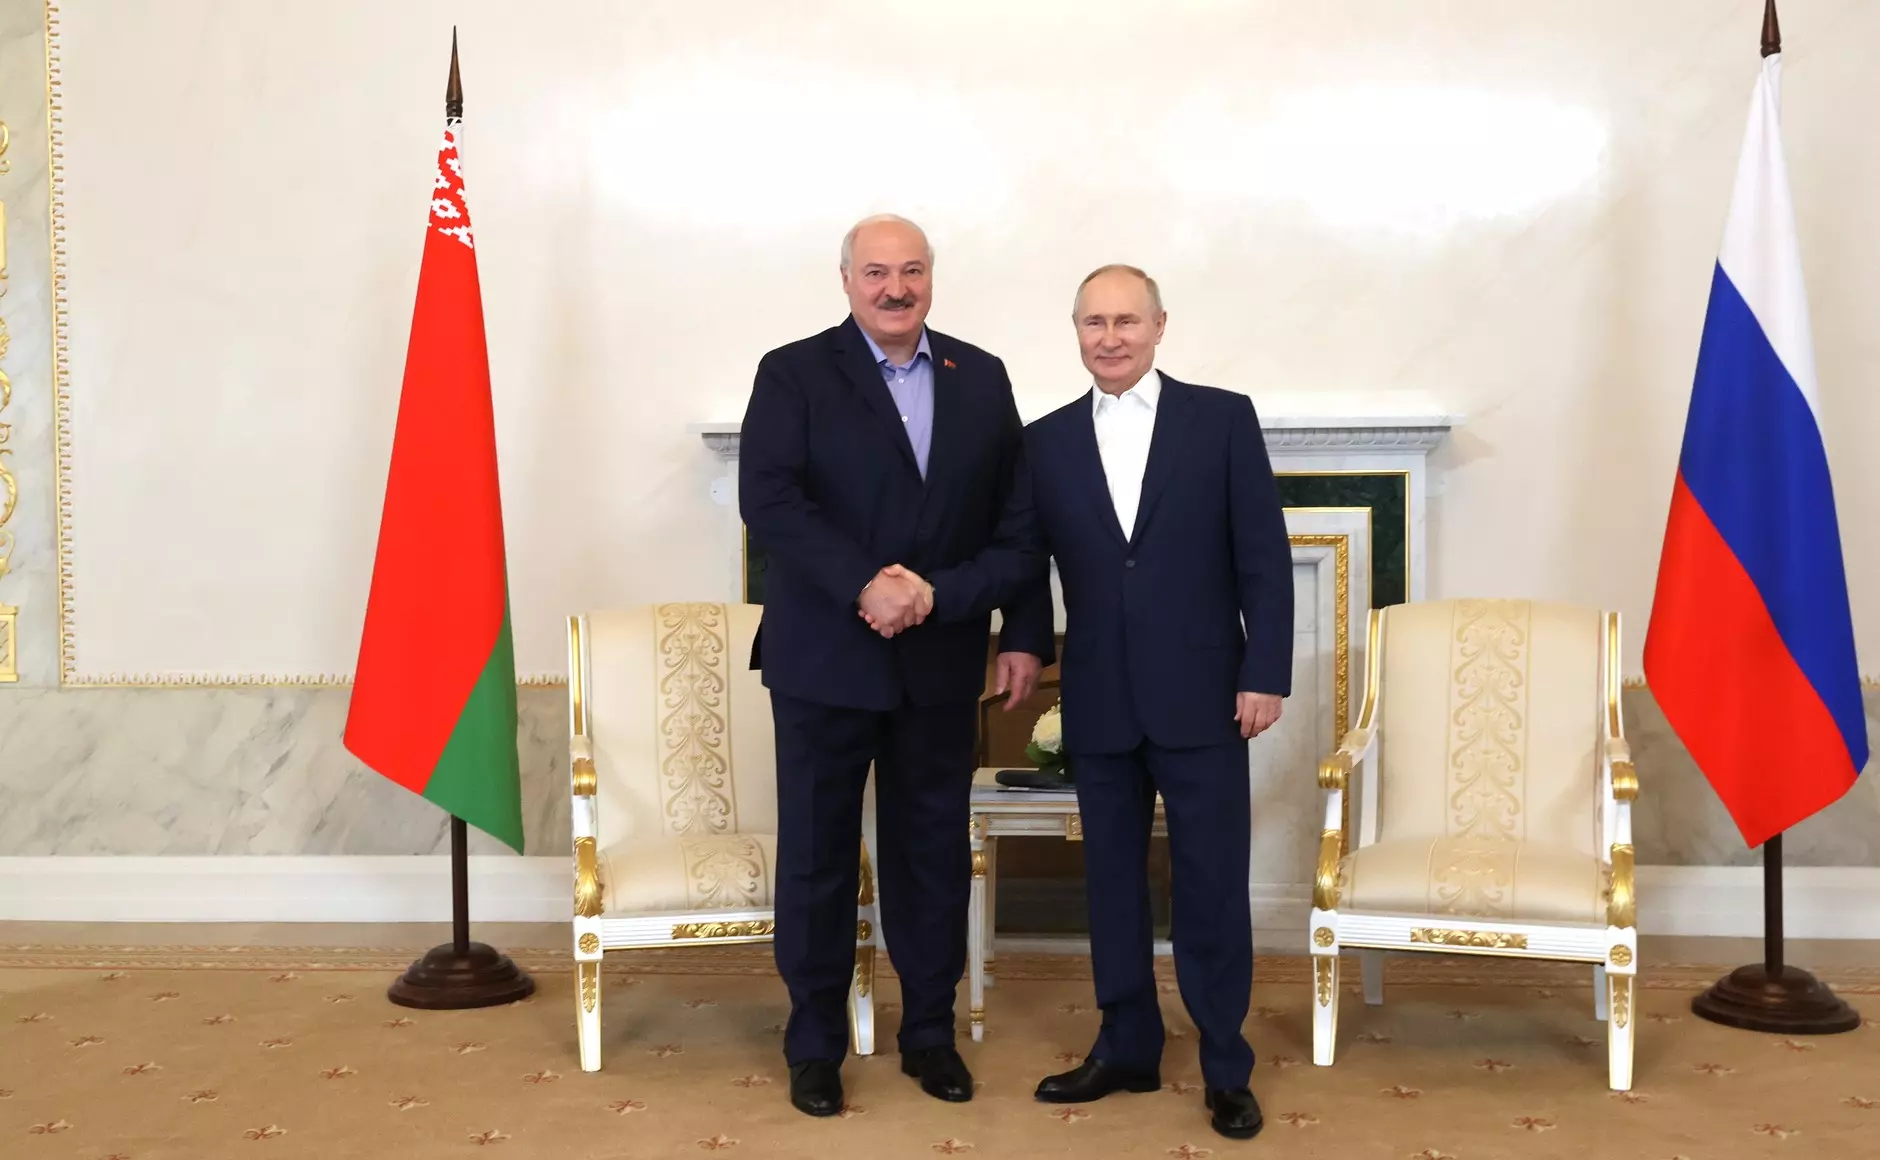 Сегодня Владимир Путин поздравил Александра Лукашенко с днем рождения